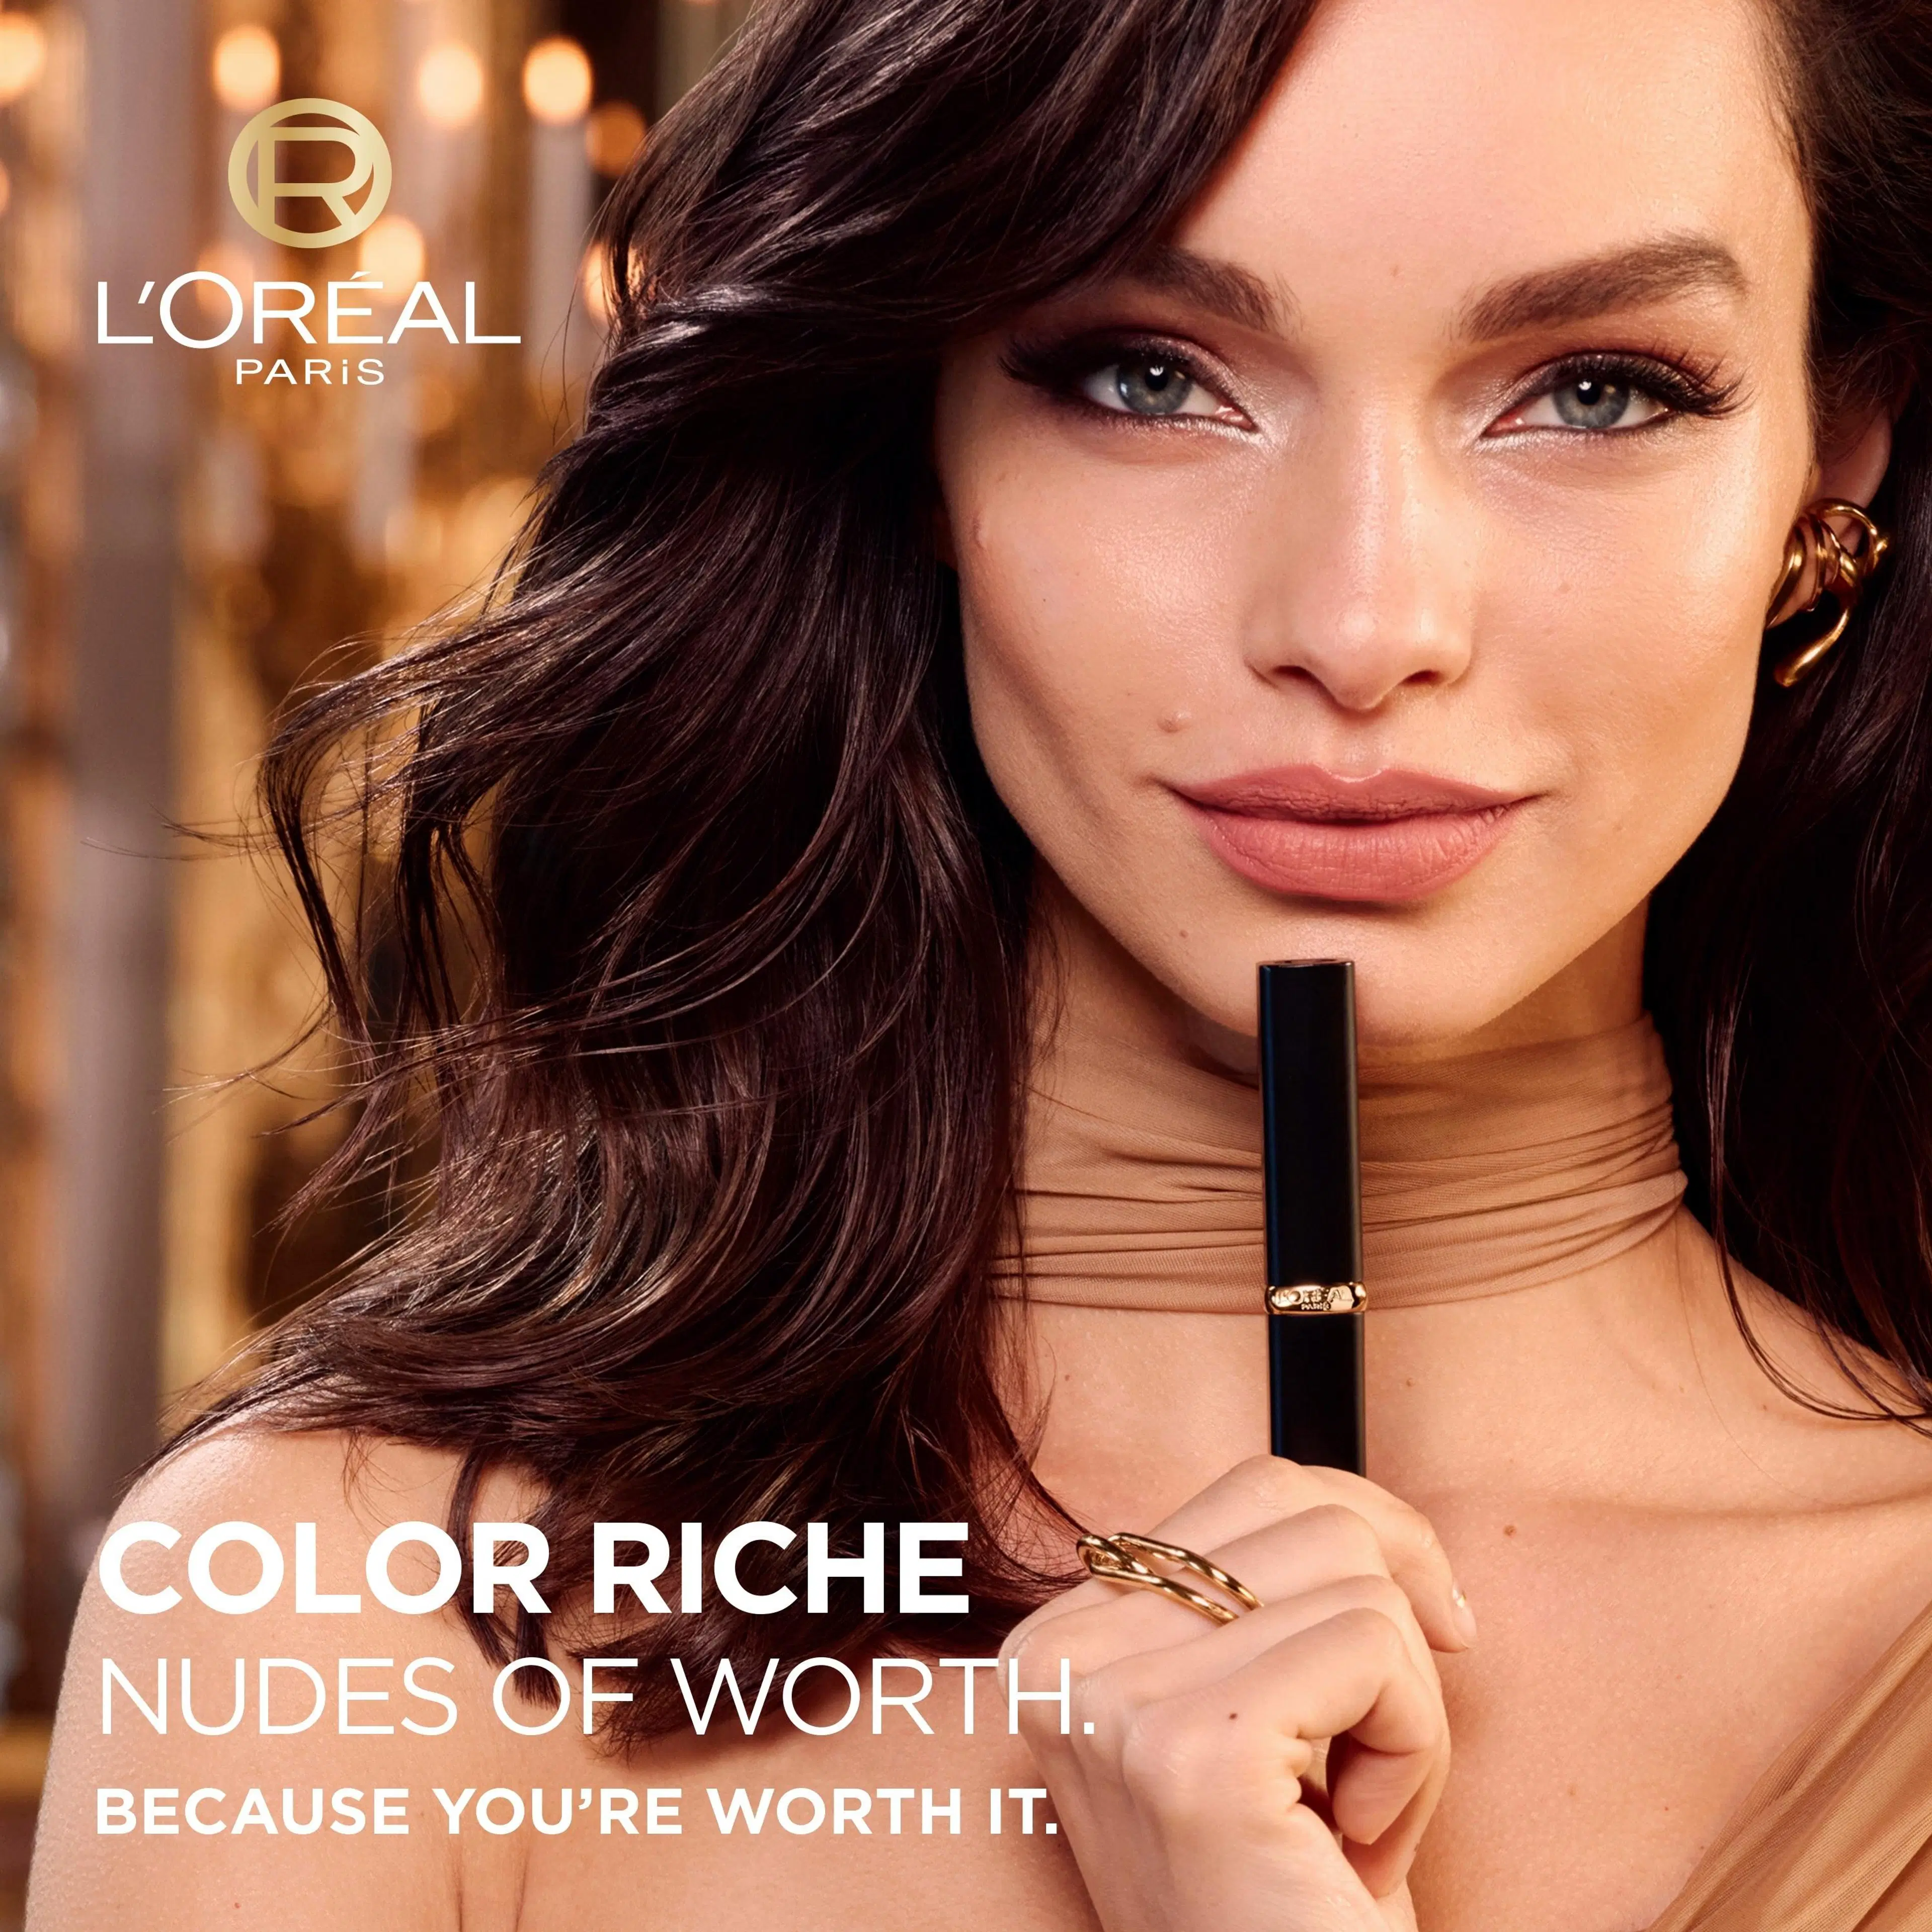 L'Oréal Paris Color Riche Intense Volume Matte 520 Le Nude Defiant huulipuna 1,8g